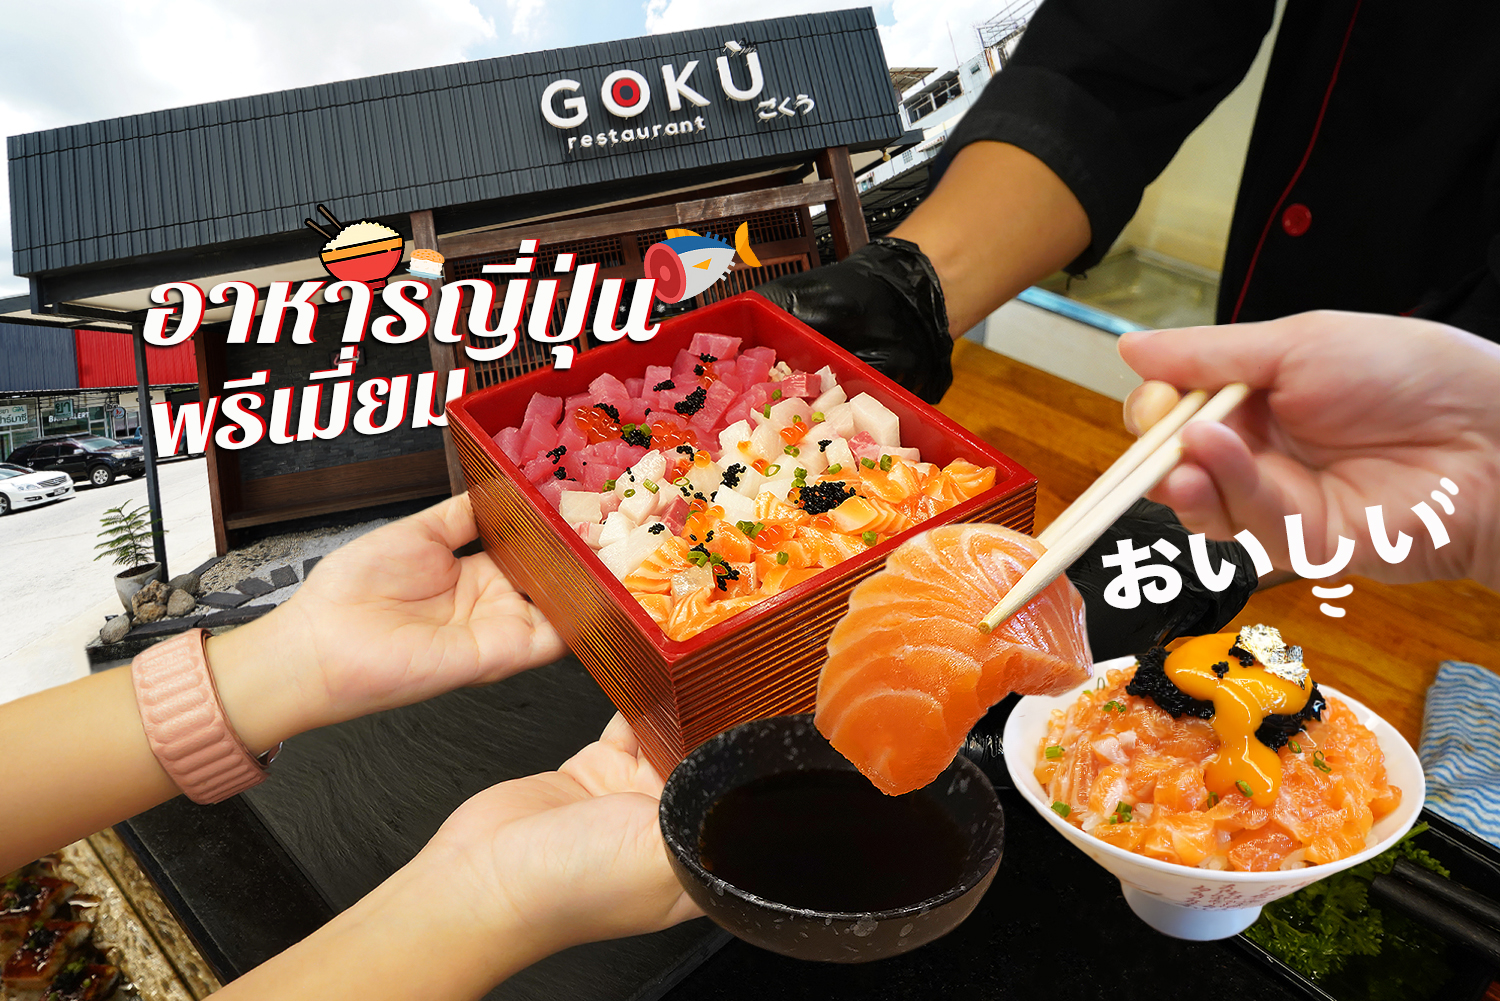 GOKU Restaurant Premium Japanese Cuisine 0